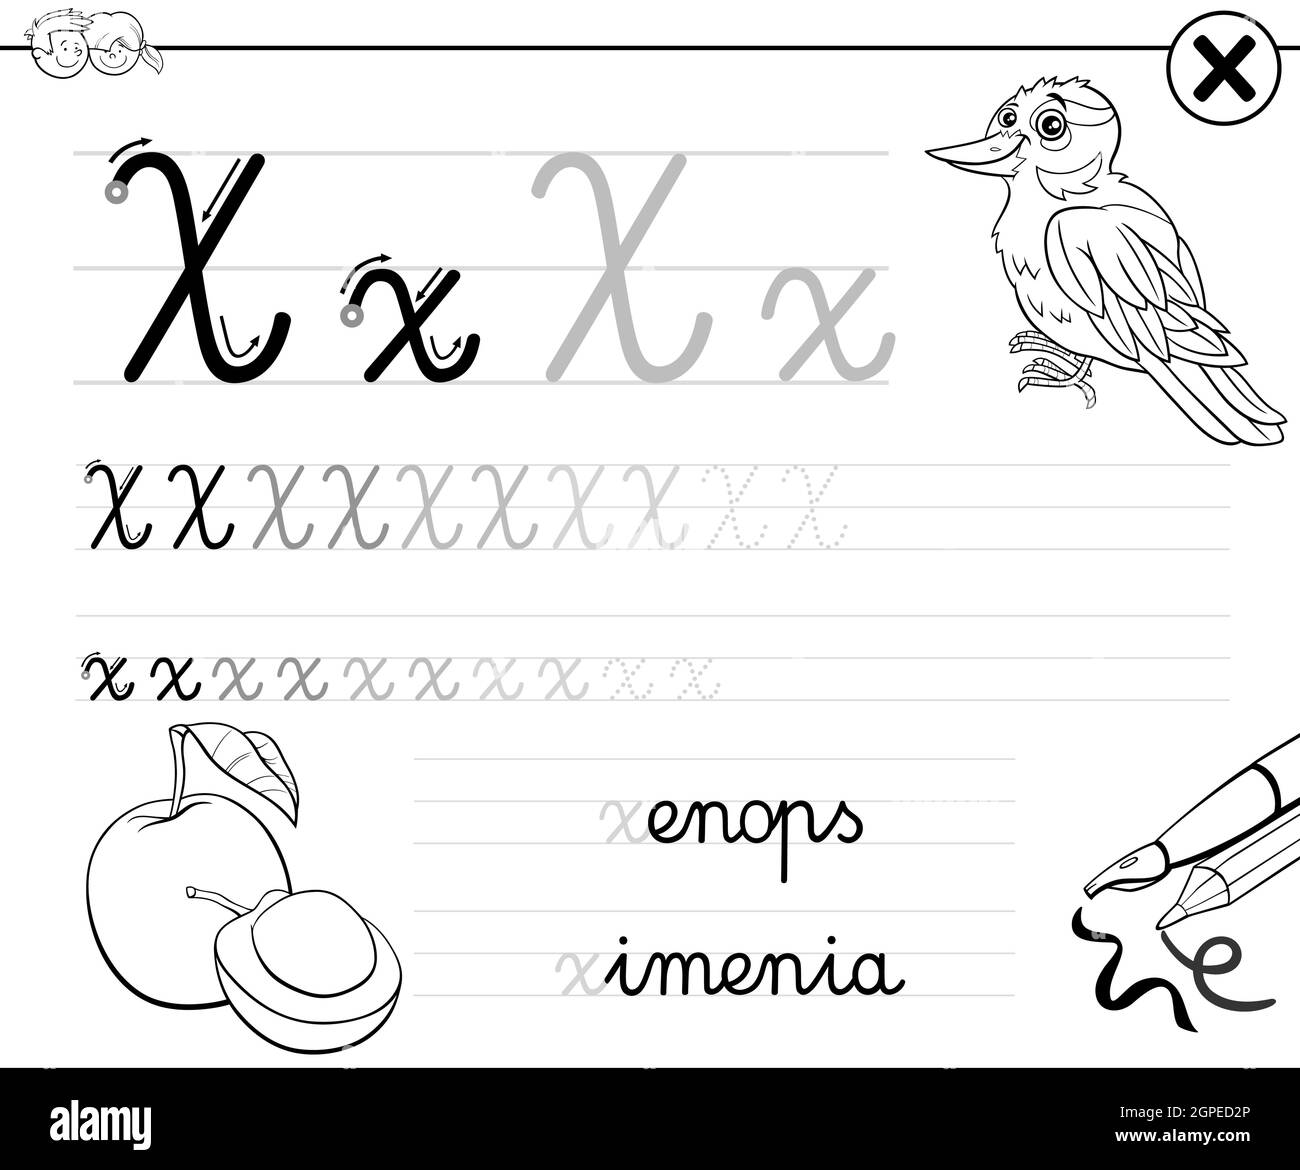 Imparare a scrivere la lettera X libro degli esercizi per i bambini Illustrazione Vettoriale